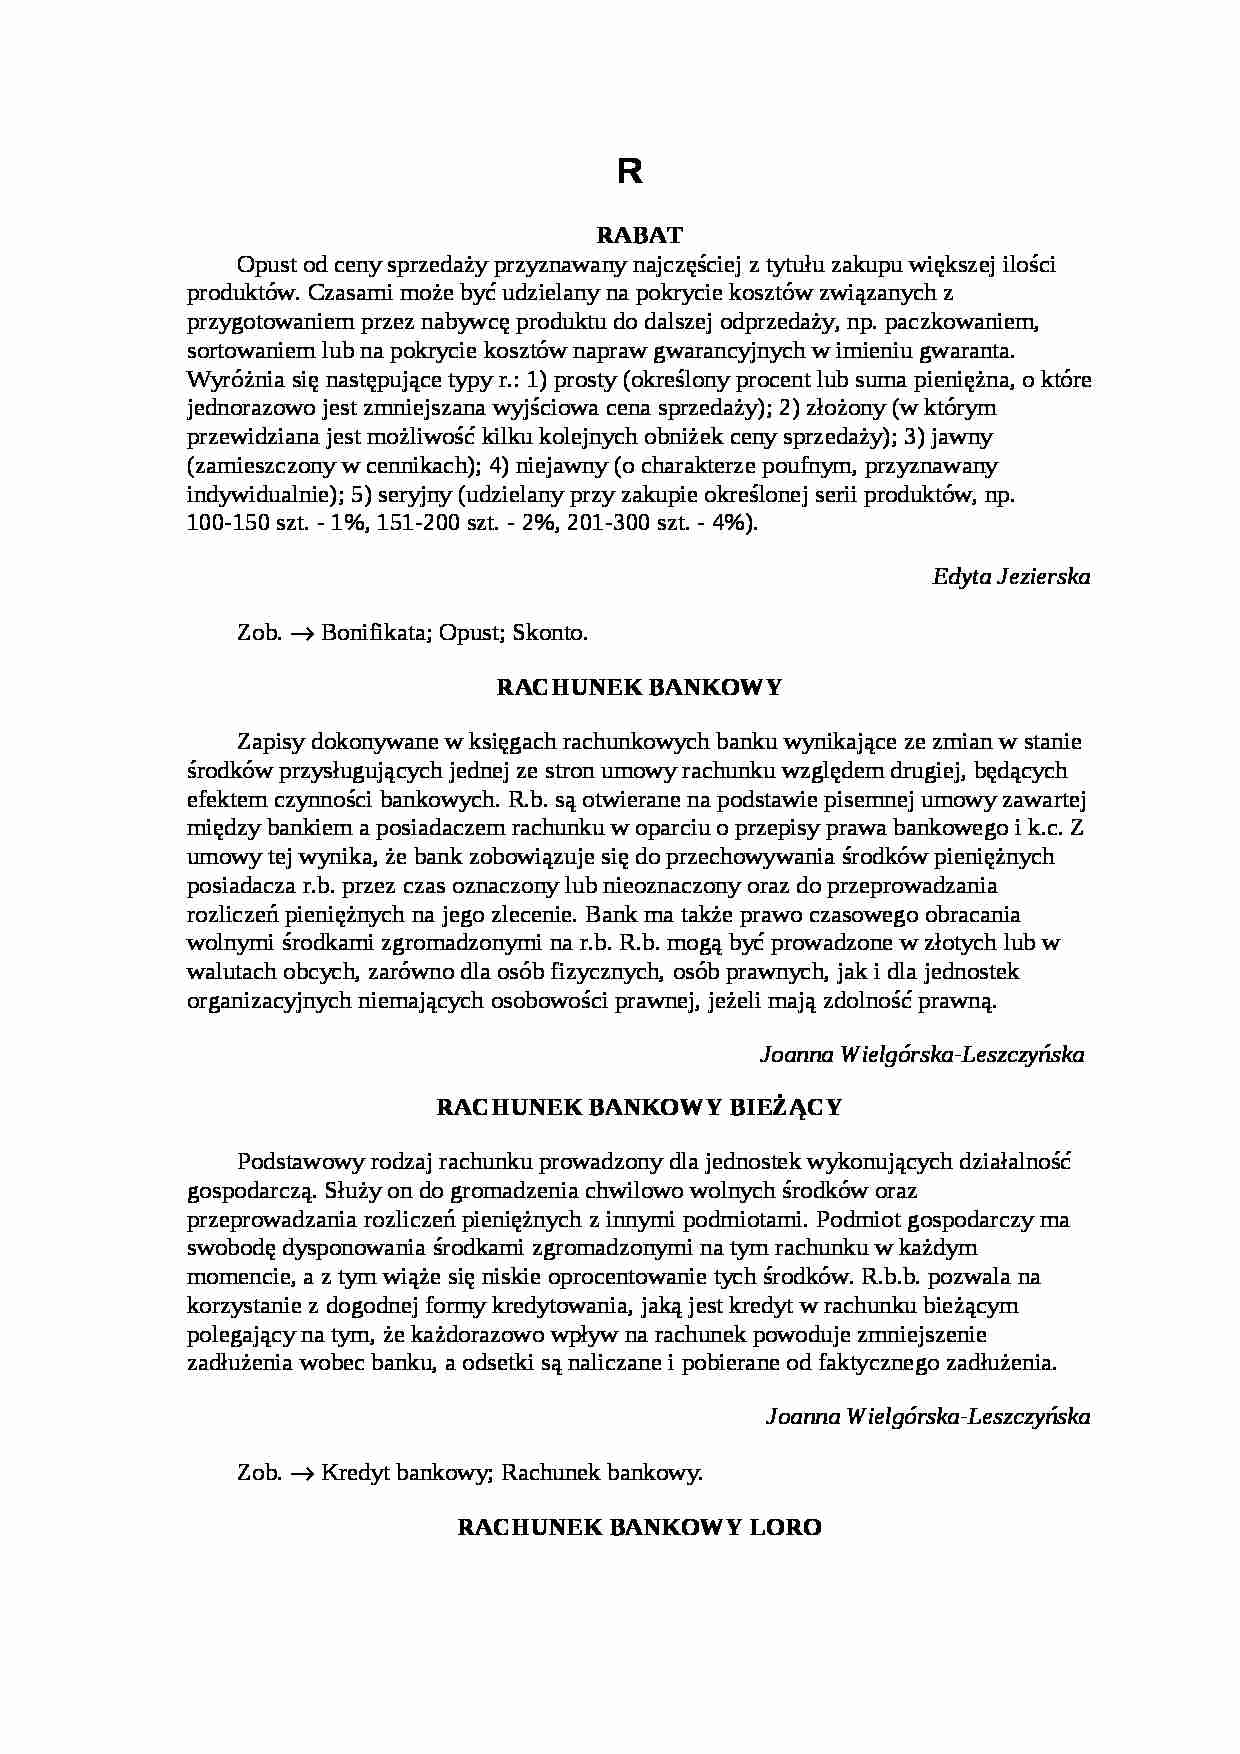 Encyklopedia rachunkowości -R - strona 1